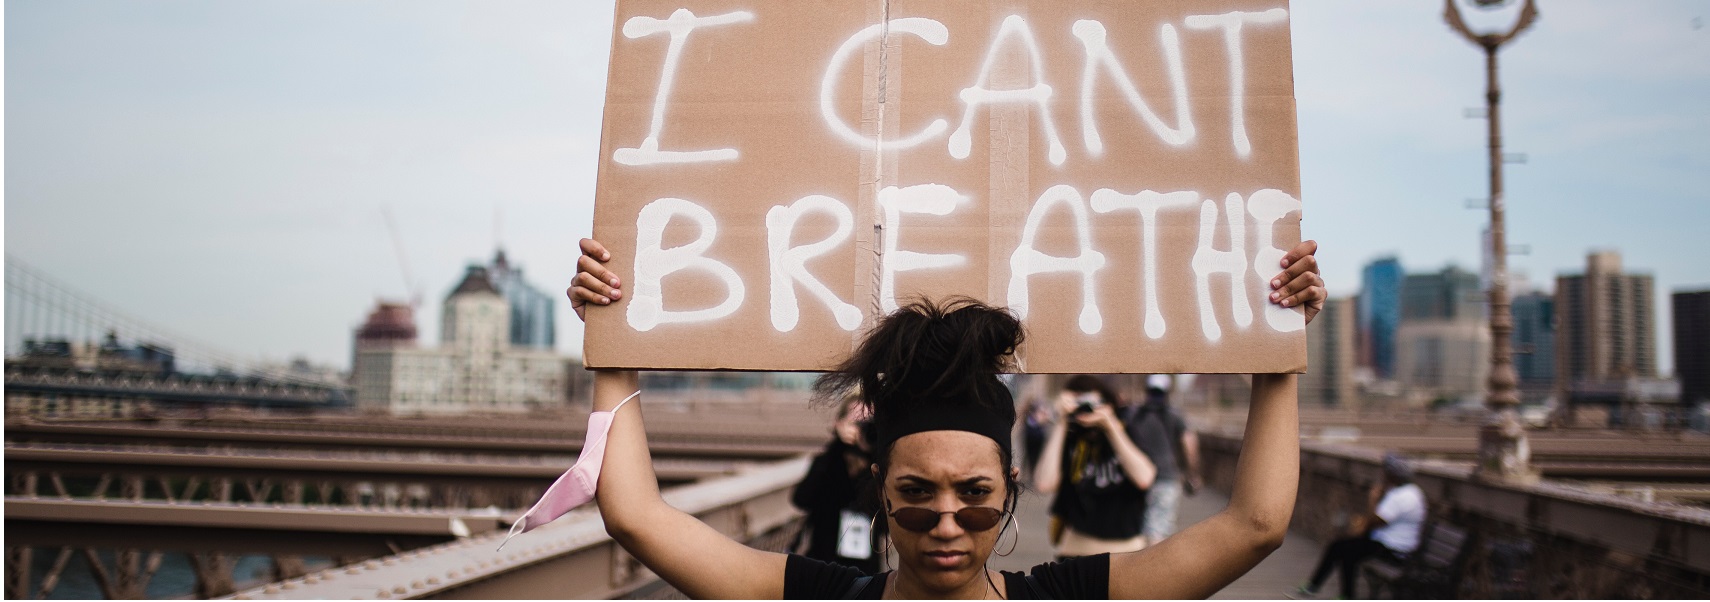 Μία γυναίκα διαδηλώνει κρατώντας ένα χαρτόνι το οποίο γράφει "I Can't Breathe"